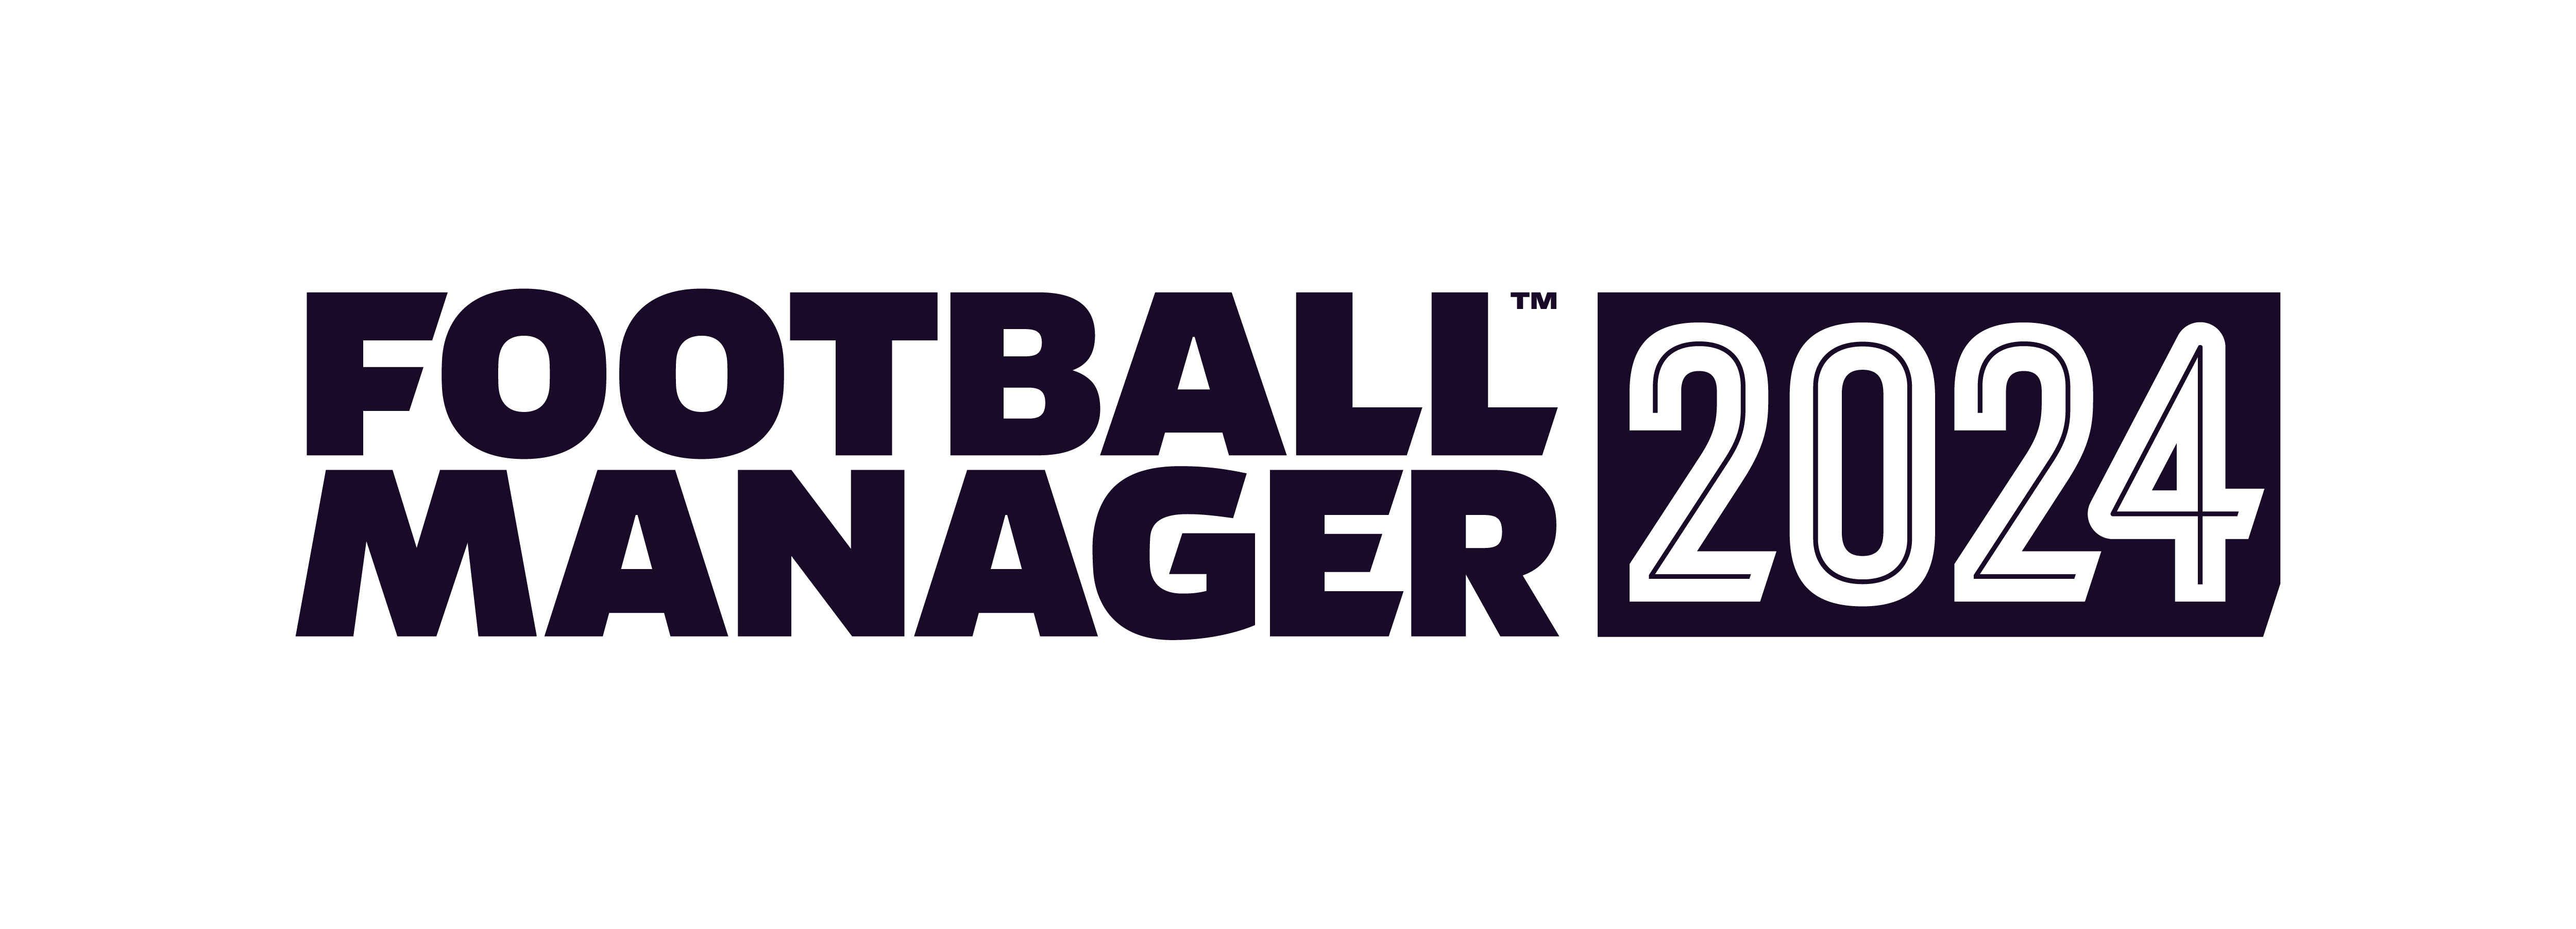 《足球经理2024》打破系列玩家人数纪录达到七百万里程碑